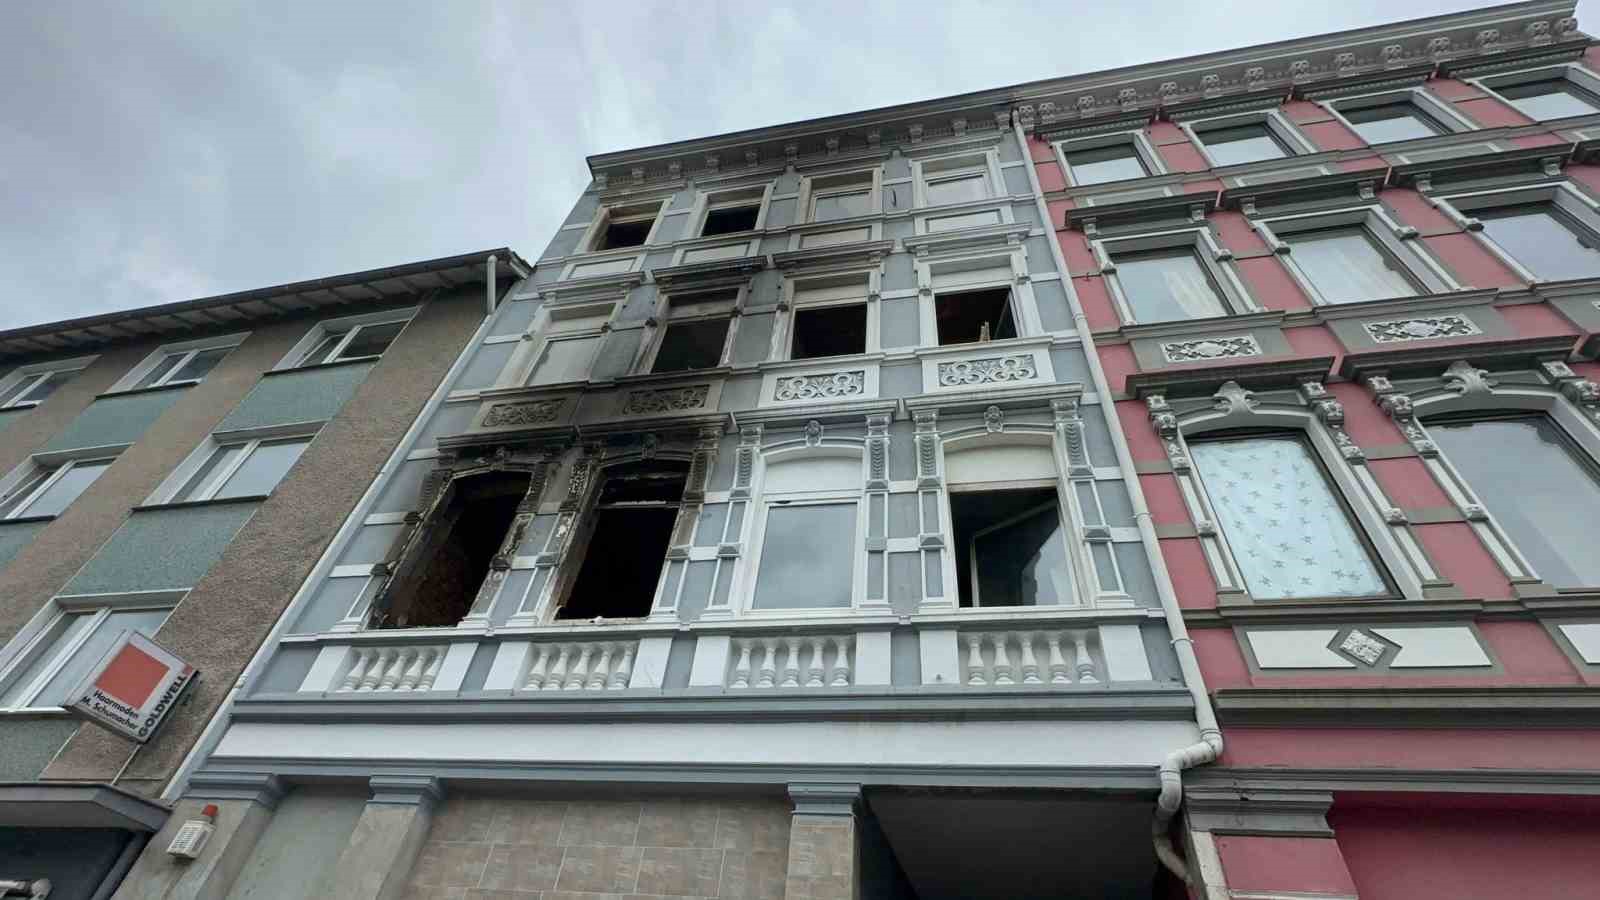 solingen’de türklerin yaşadığı bina kundaklandı: 2’si çocuk 4 ölü, 9 yaralı